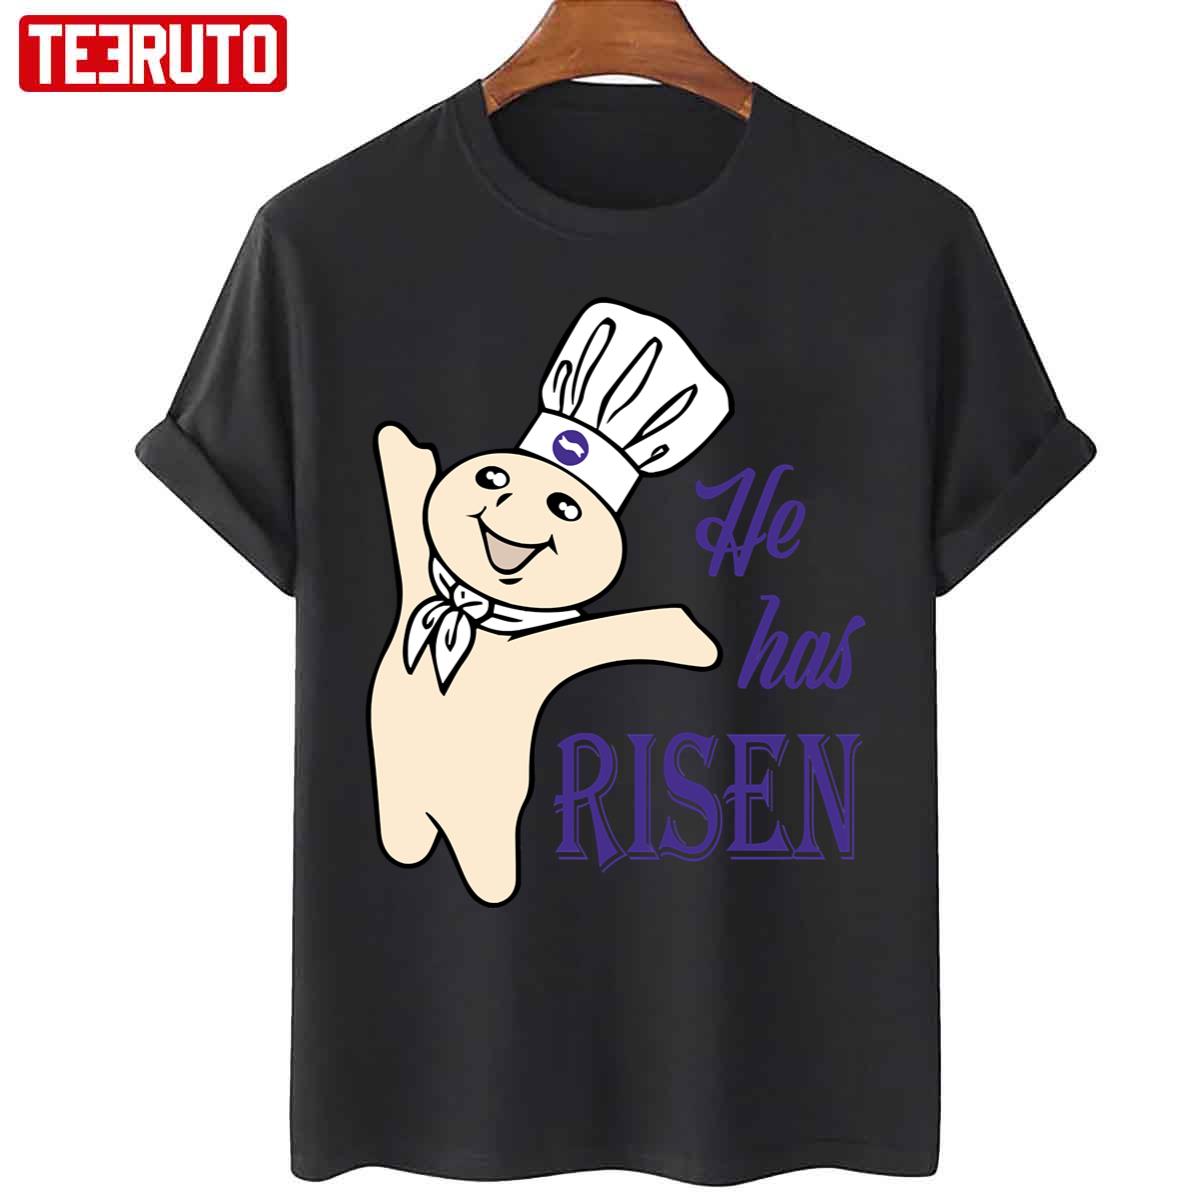 He Hes Risen Doughboy Pillsbury Purple Unisex T Shirt Teeruto 8411